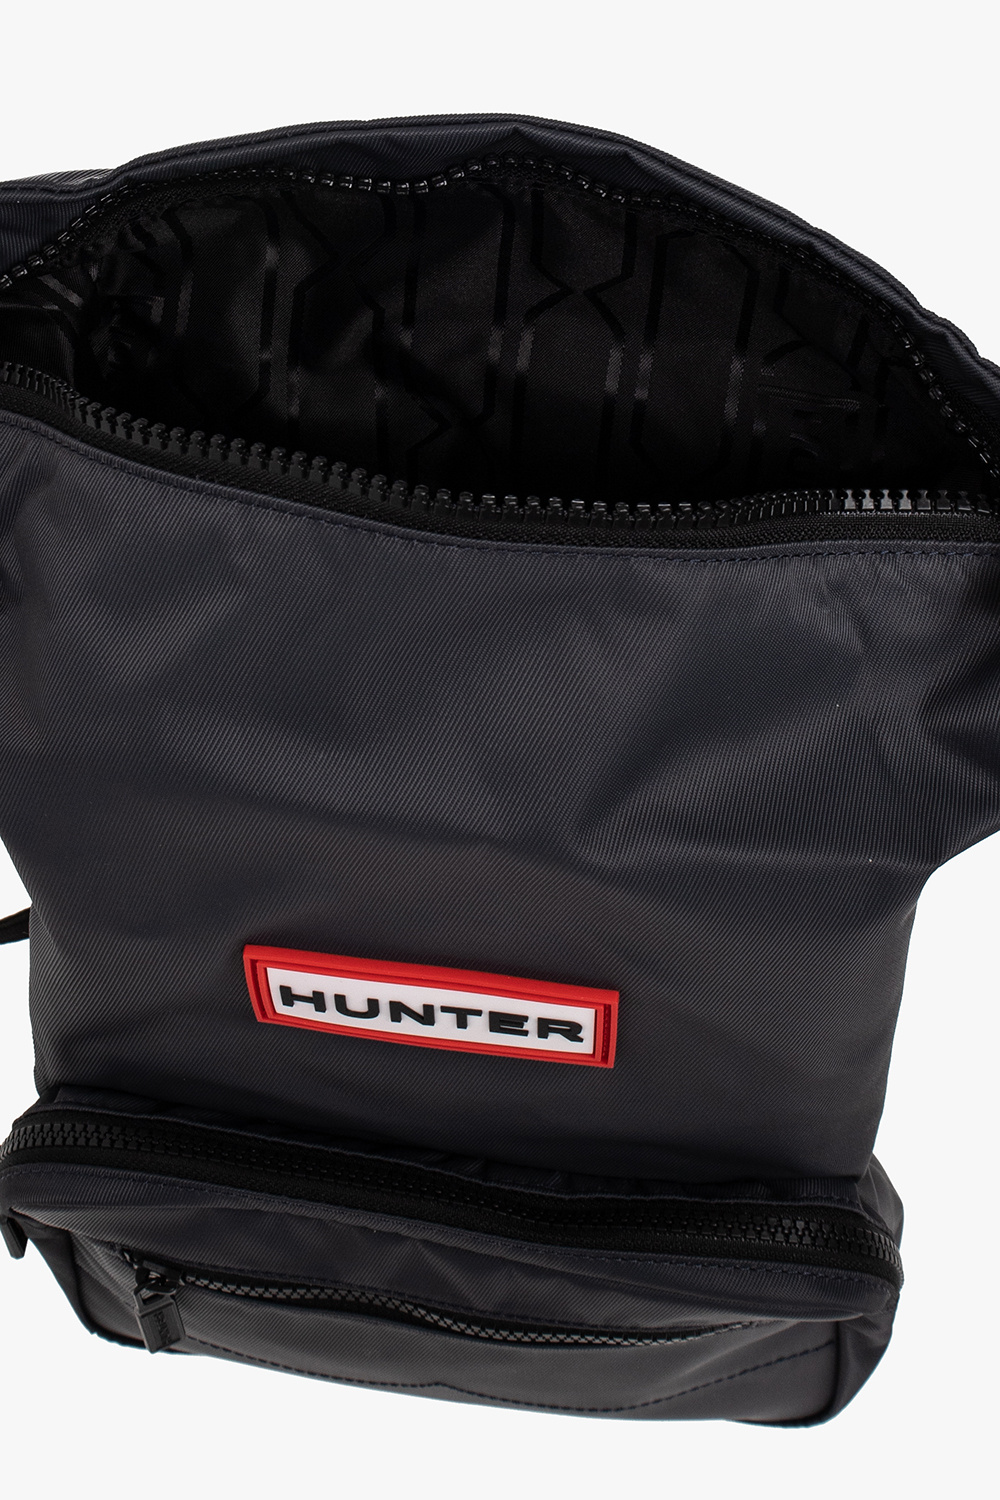 Hunter Prada logo lettered crossbody bag